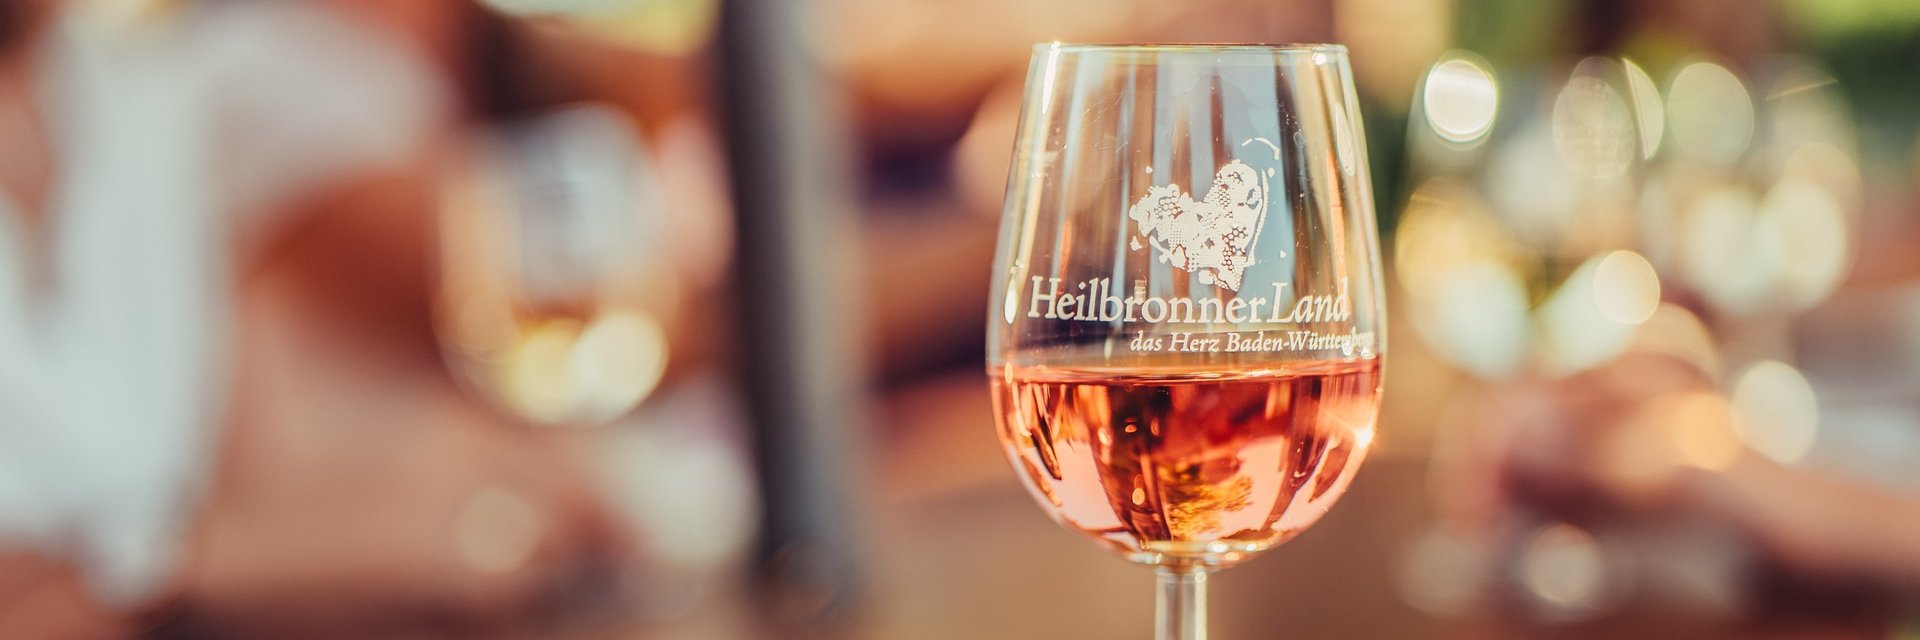 Weinregion HeilbronnerLand | © Chris Frumolt